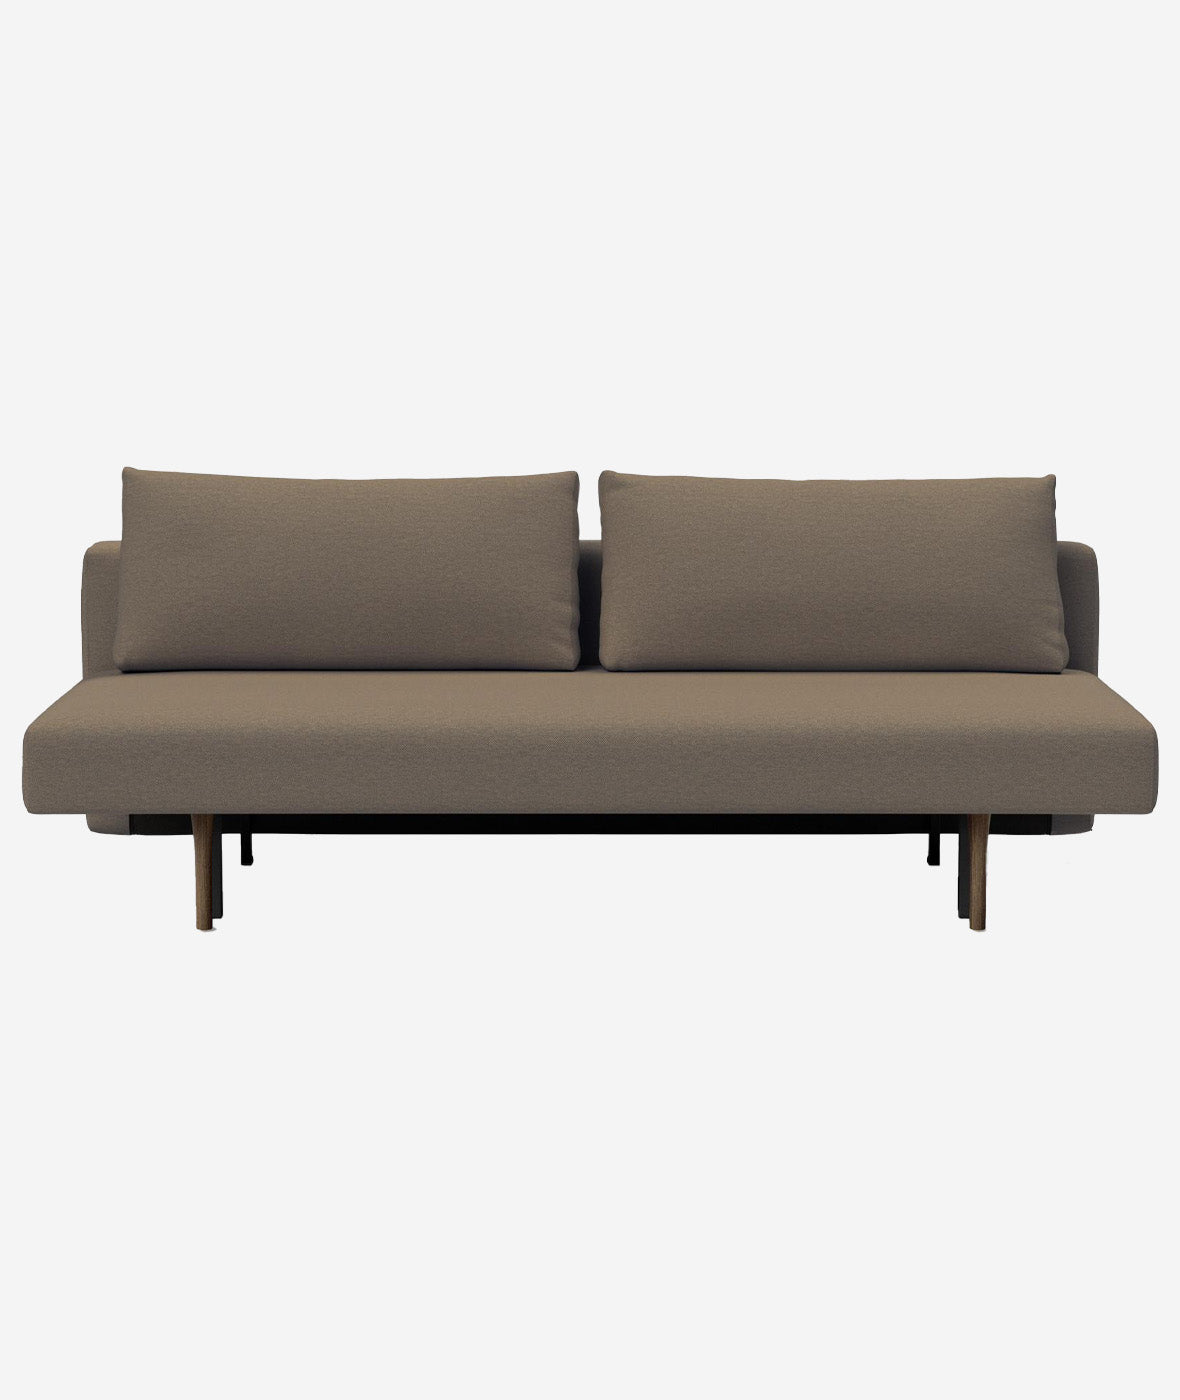 Conlix Sleeper Sofa - More Options